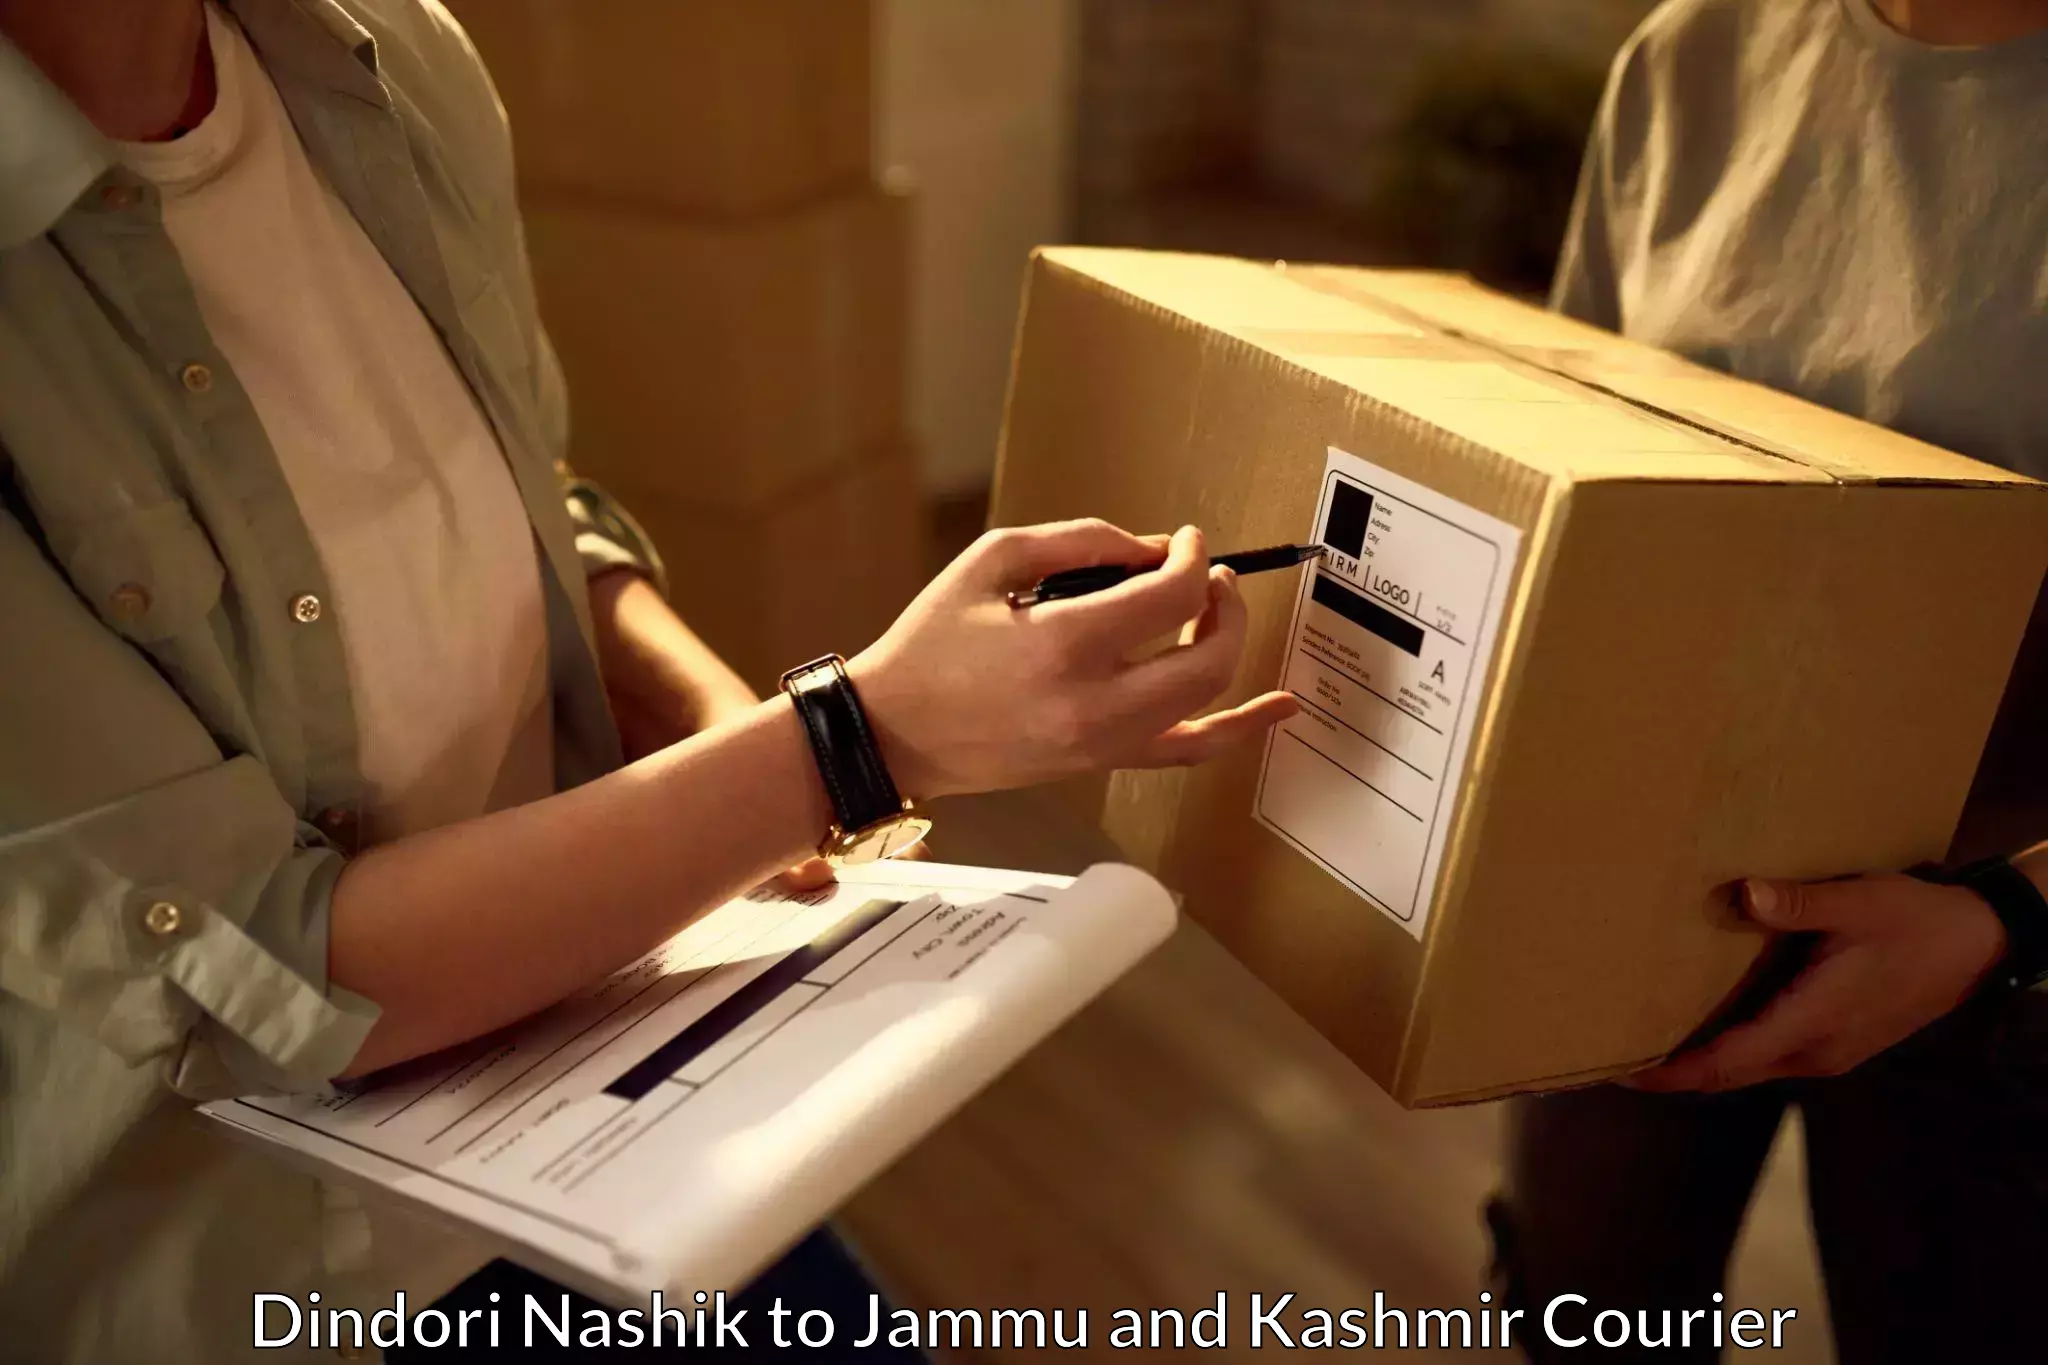 Urgent courier needs Dindori Nashik to Jammu